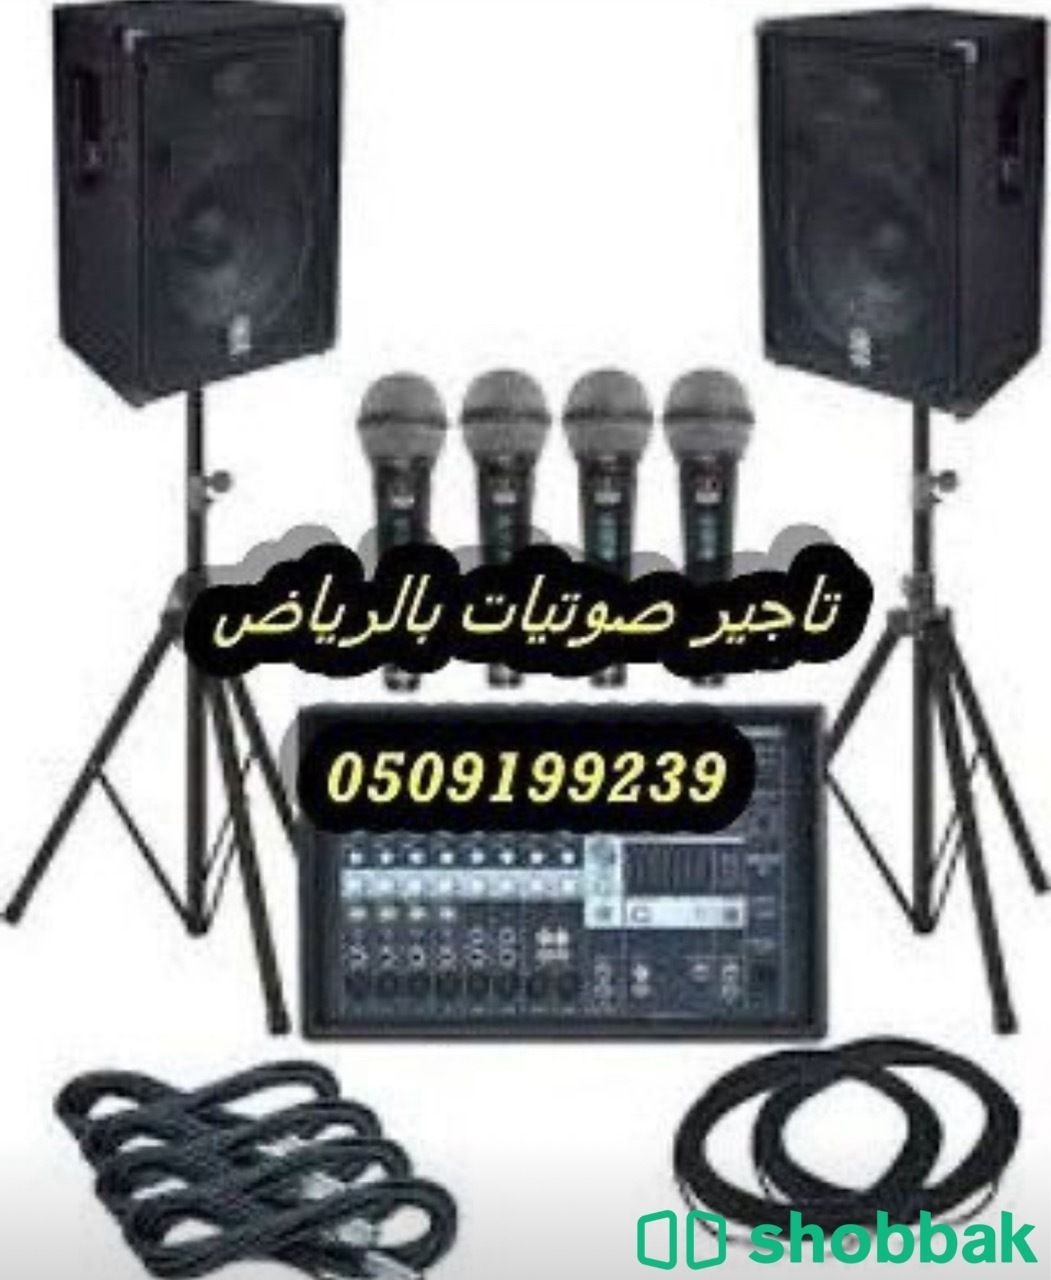 تاجير سماعات بالرياض صوتيات سيوف منبرية للحفلات  Shobbak Saudi Arabia